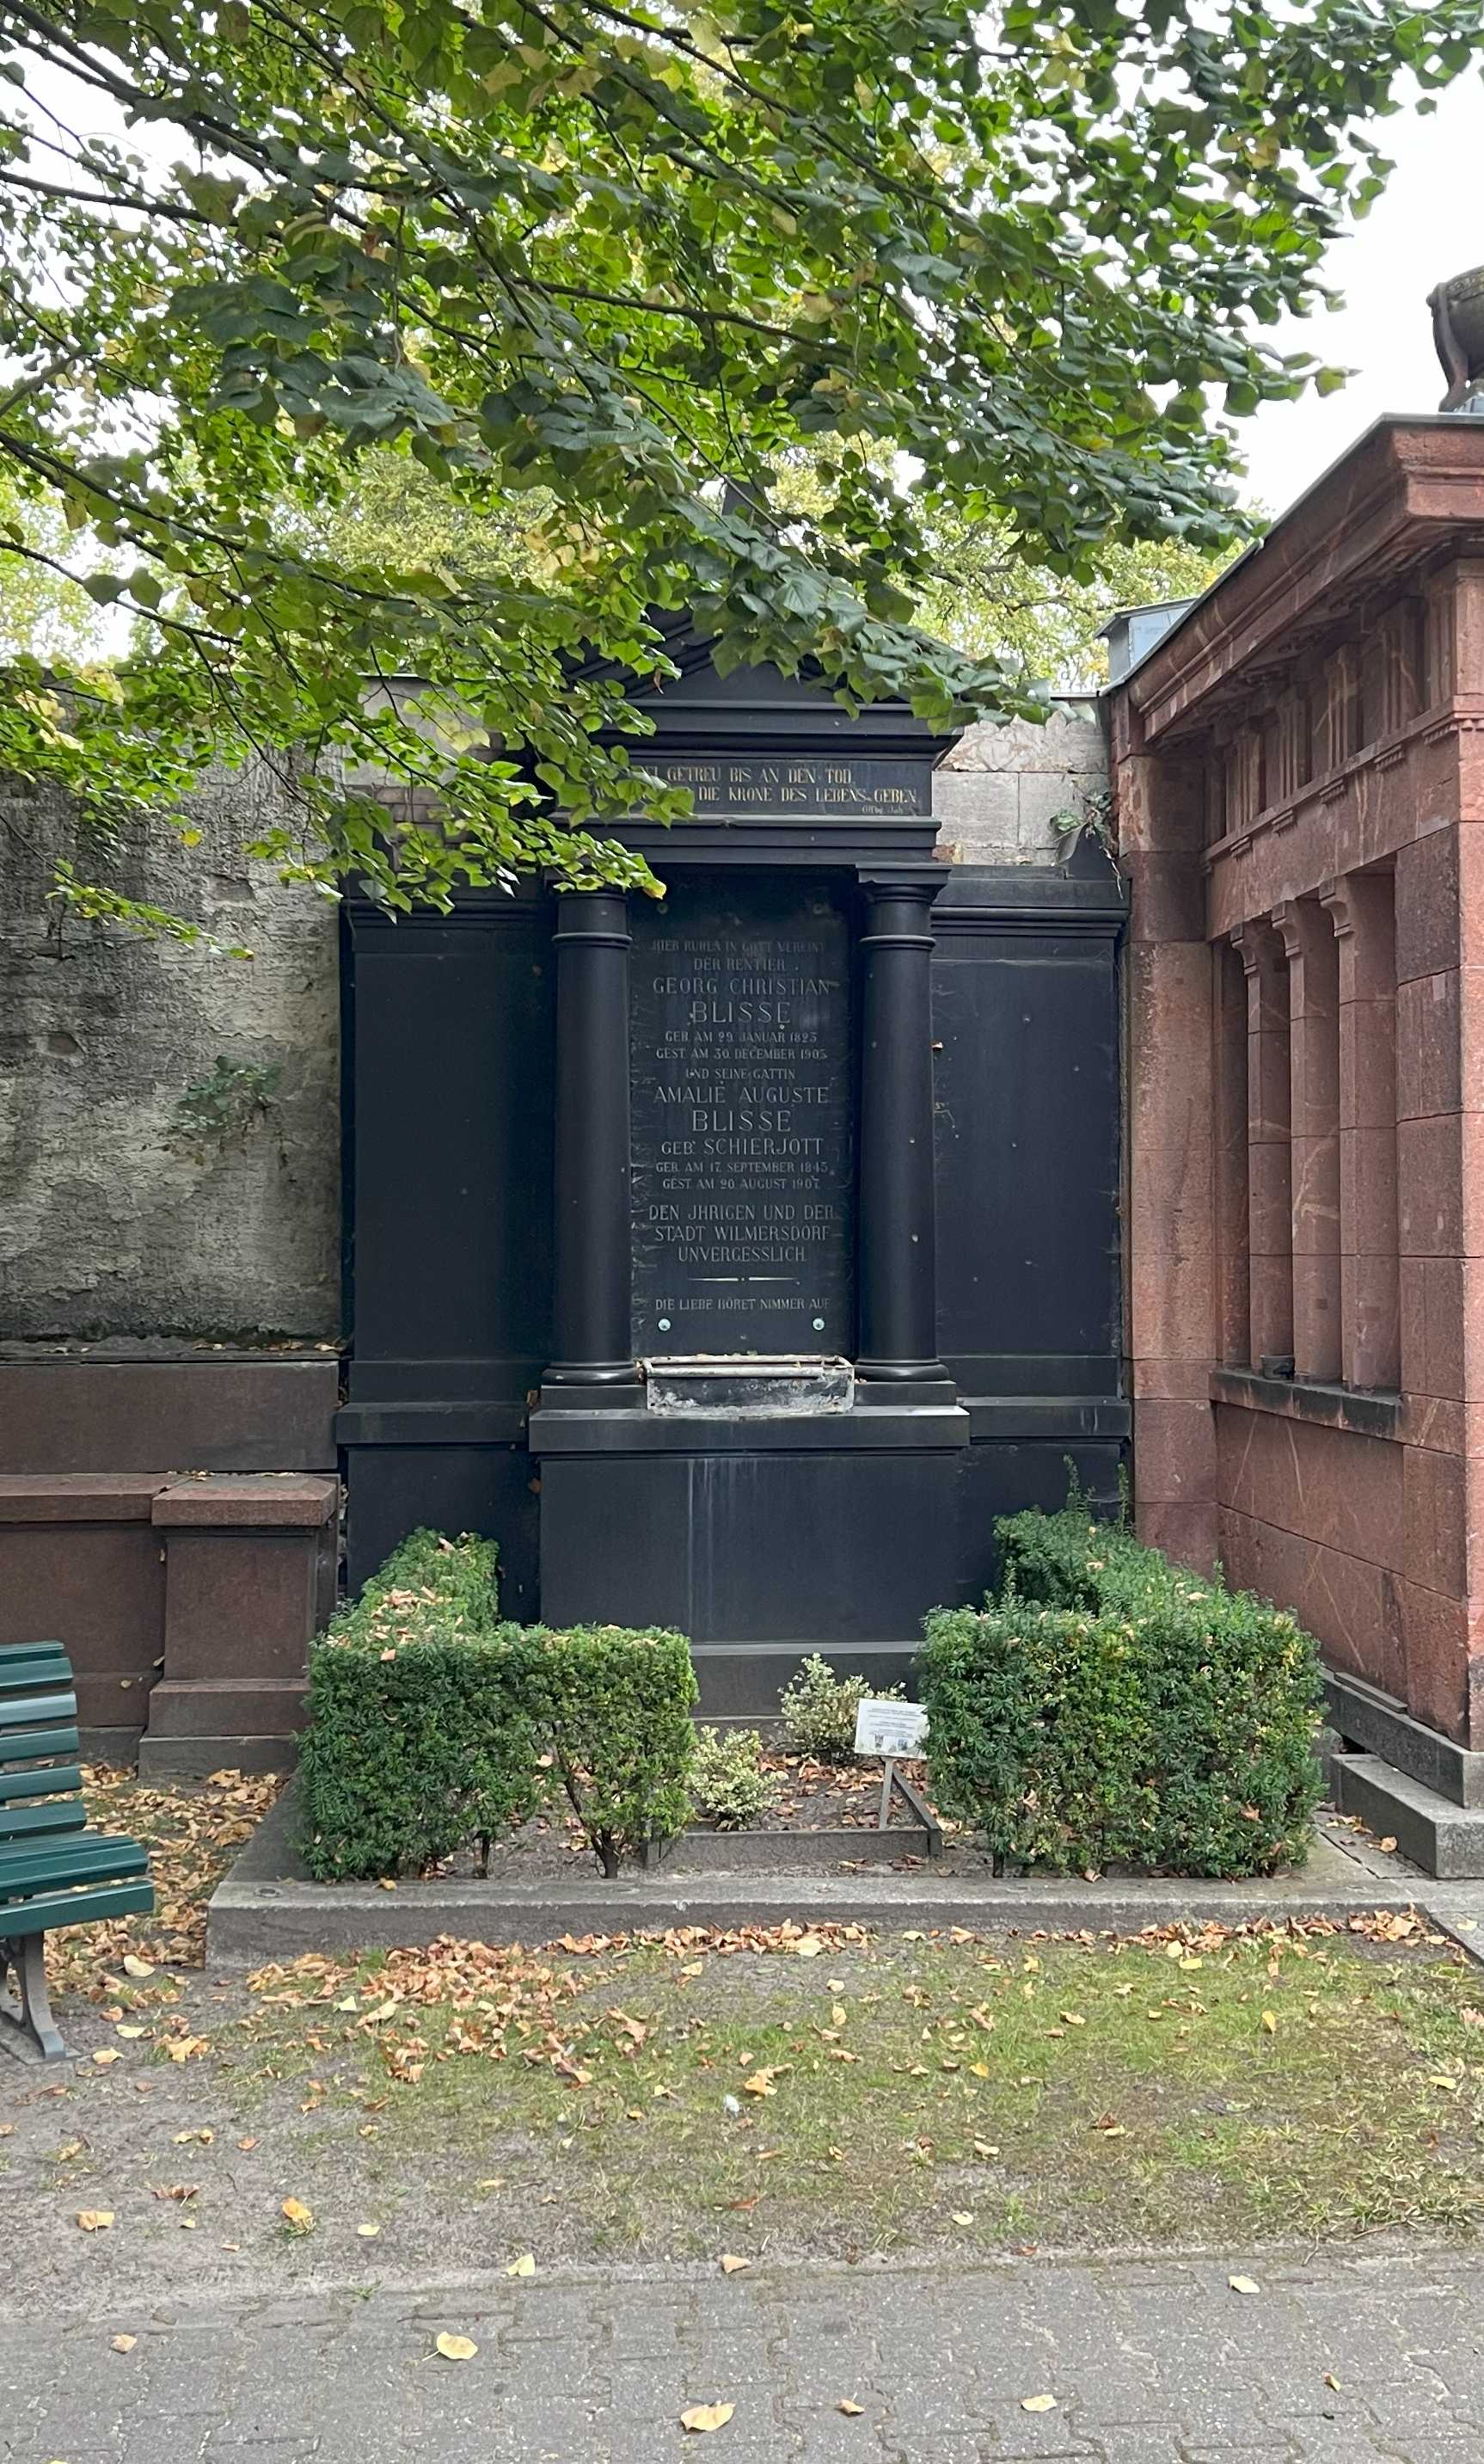 Grabstein Georg Christian Blisse, Friedhof Wilmersdorf, Berlin